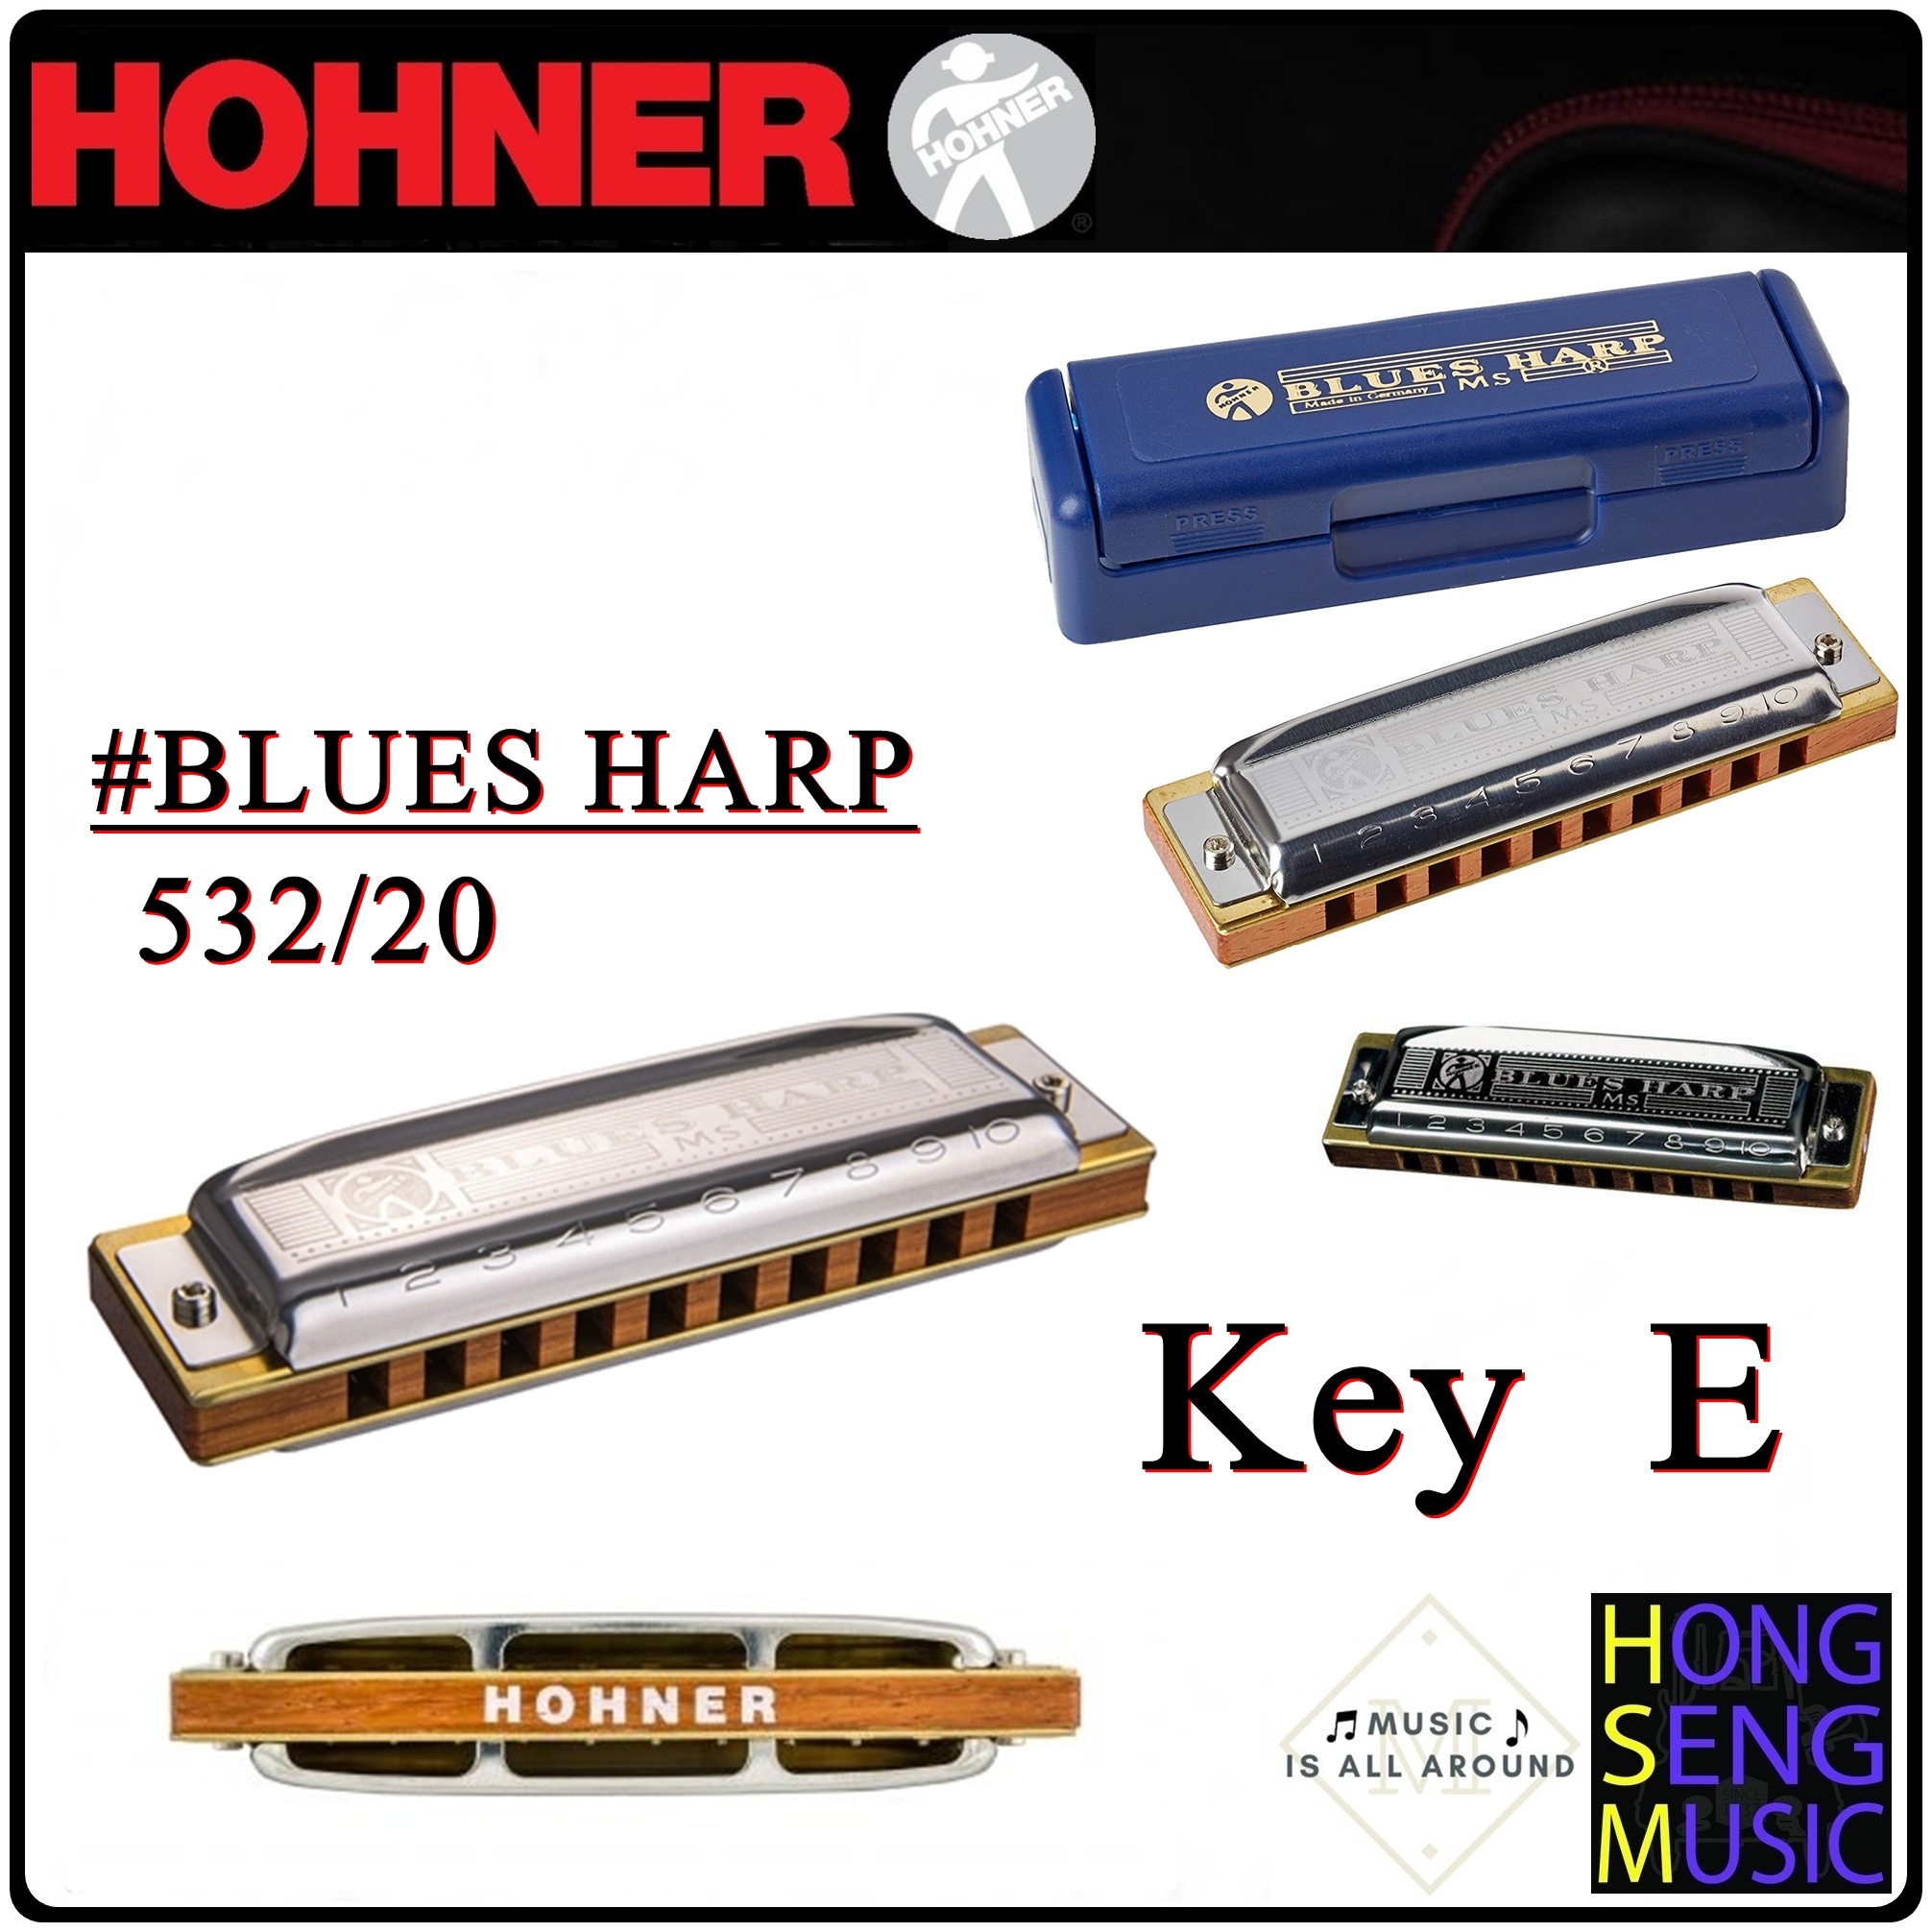 ฮาร์โมนิก้า (เม้าท์ออร์แกน) Hohner รุ่น BLUES HARP Harmonica 532/20 Key E